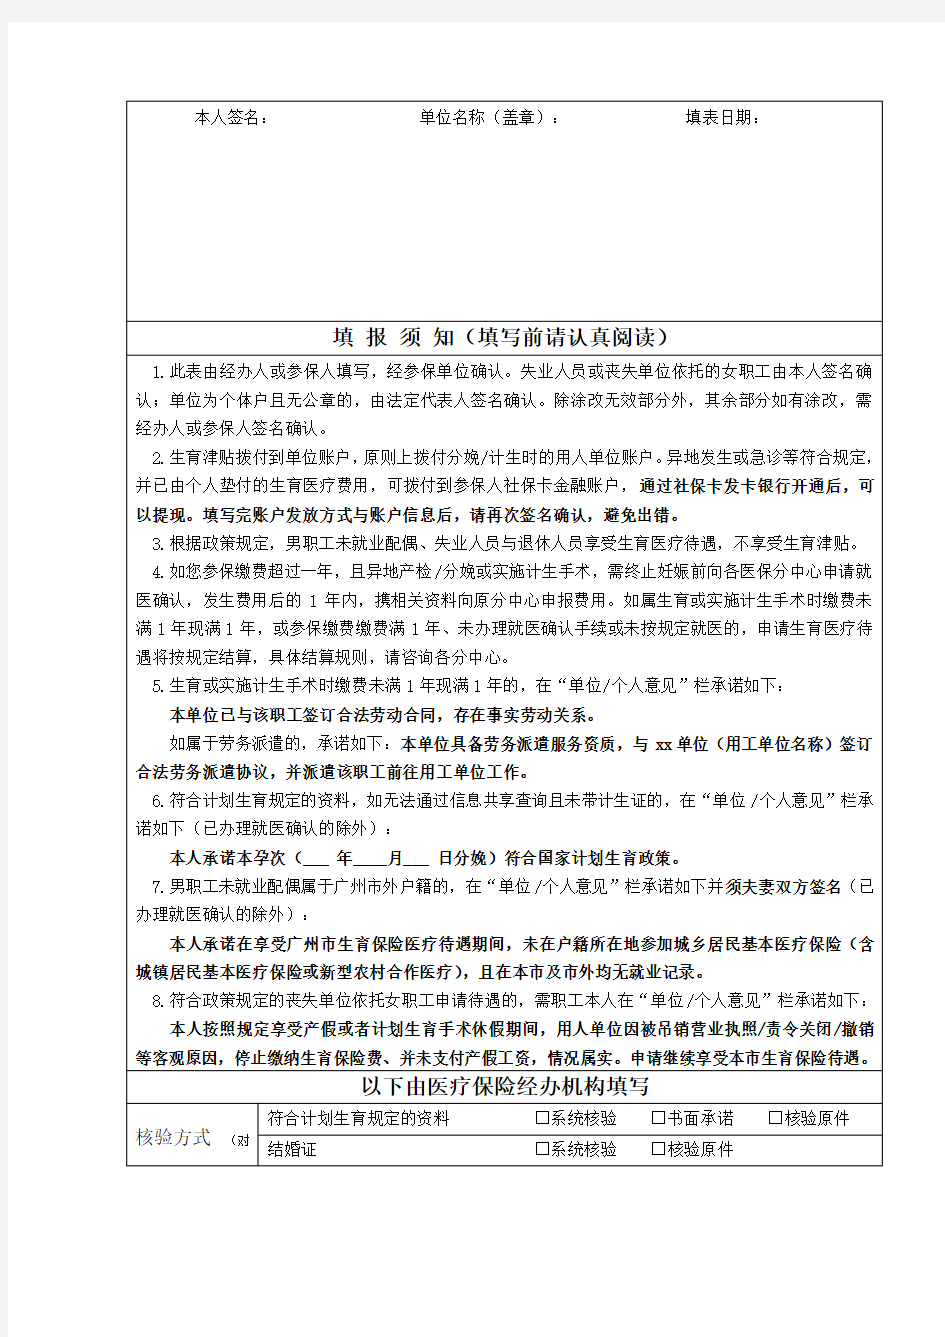 2020年最新版的广州市职工生育保险待遇申请表